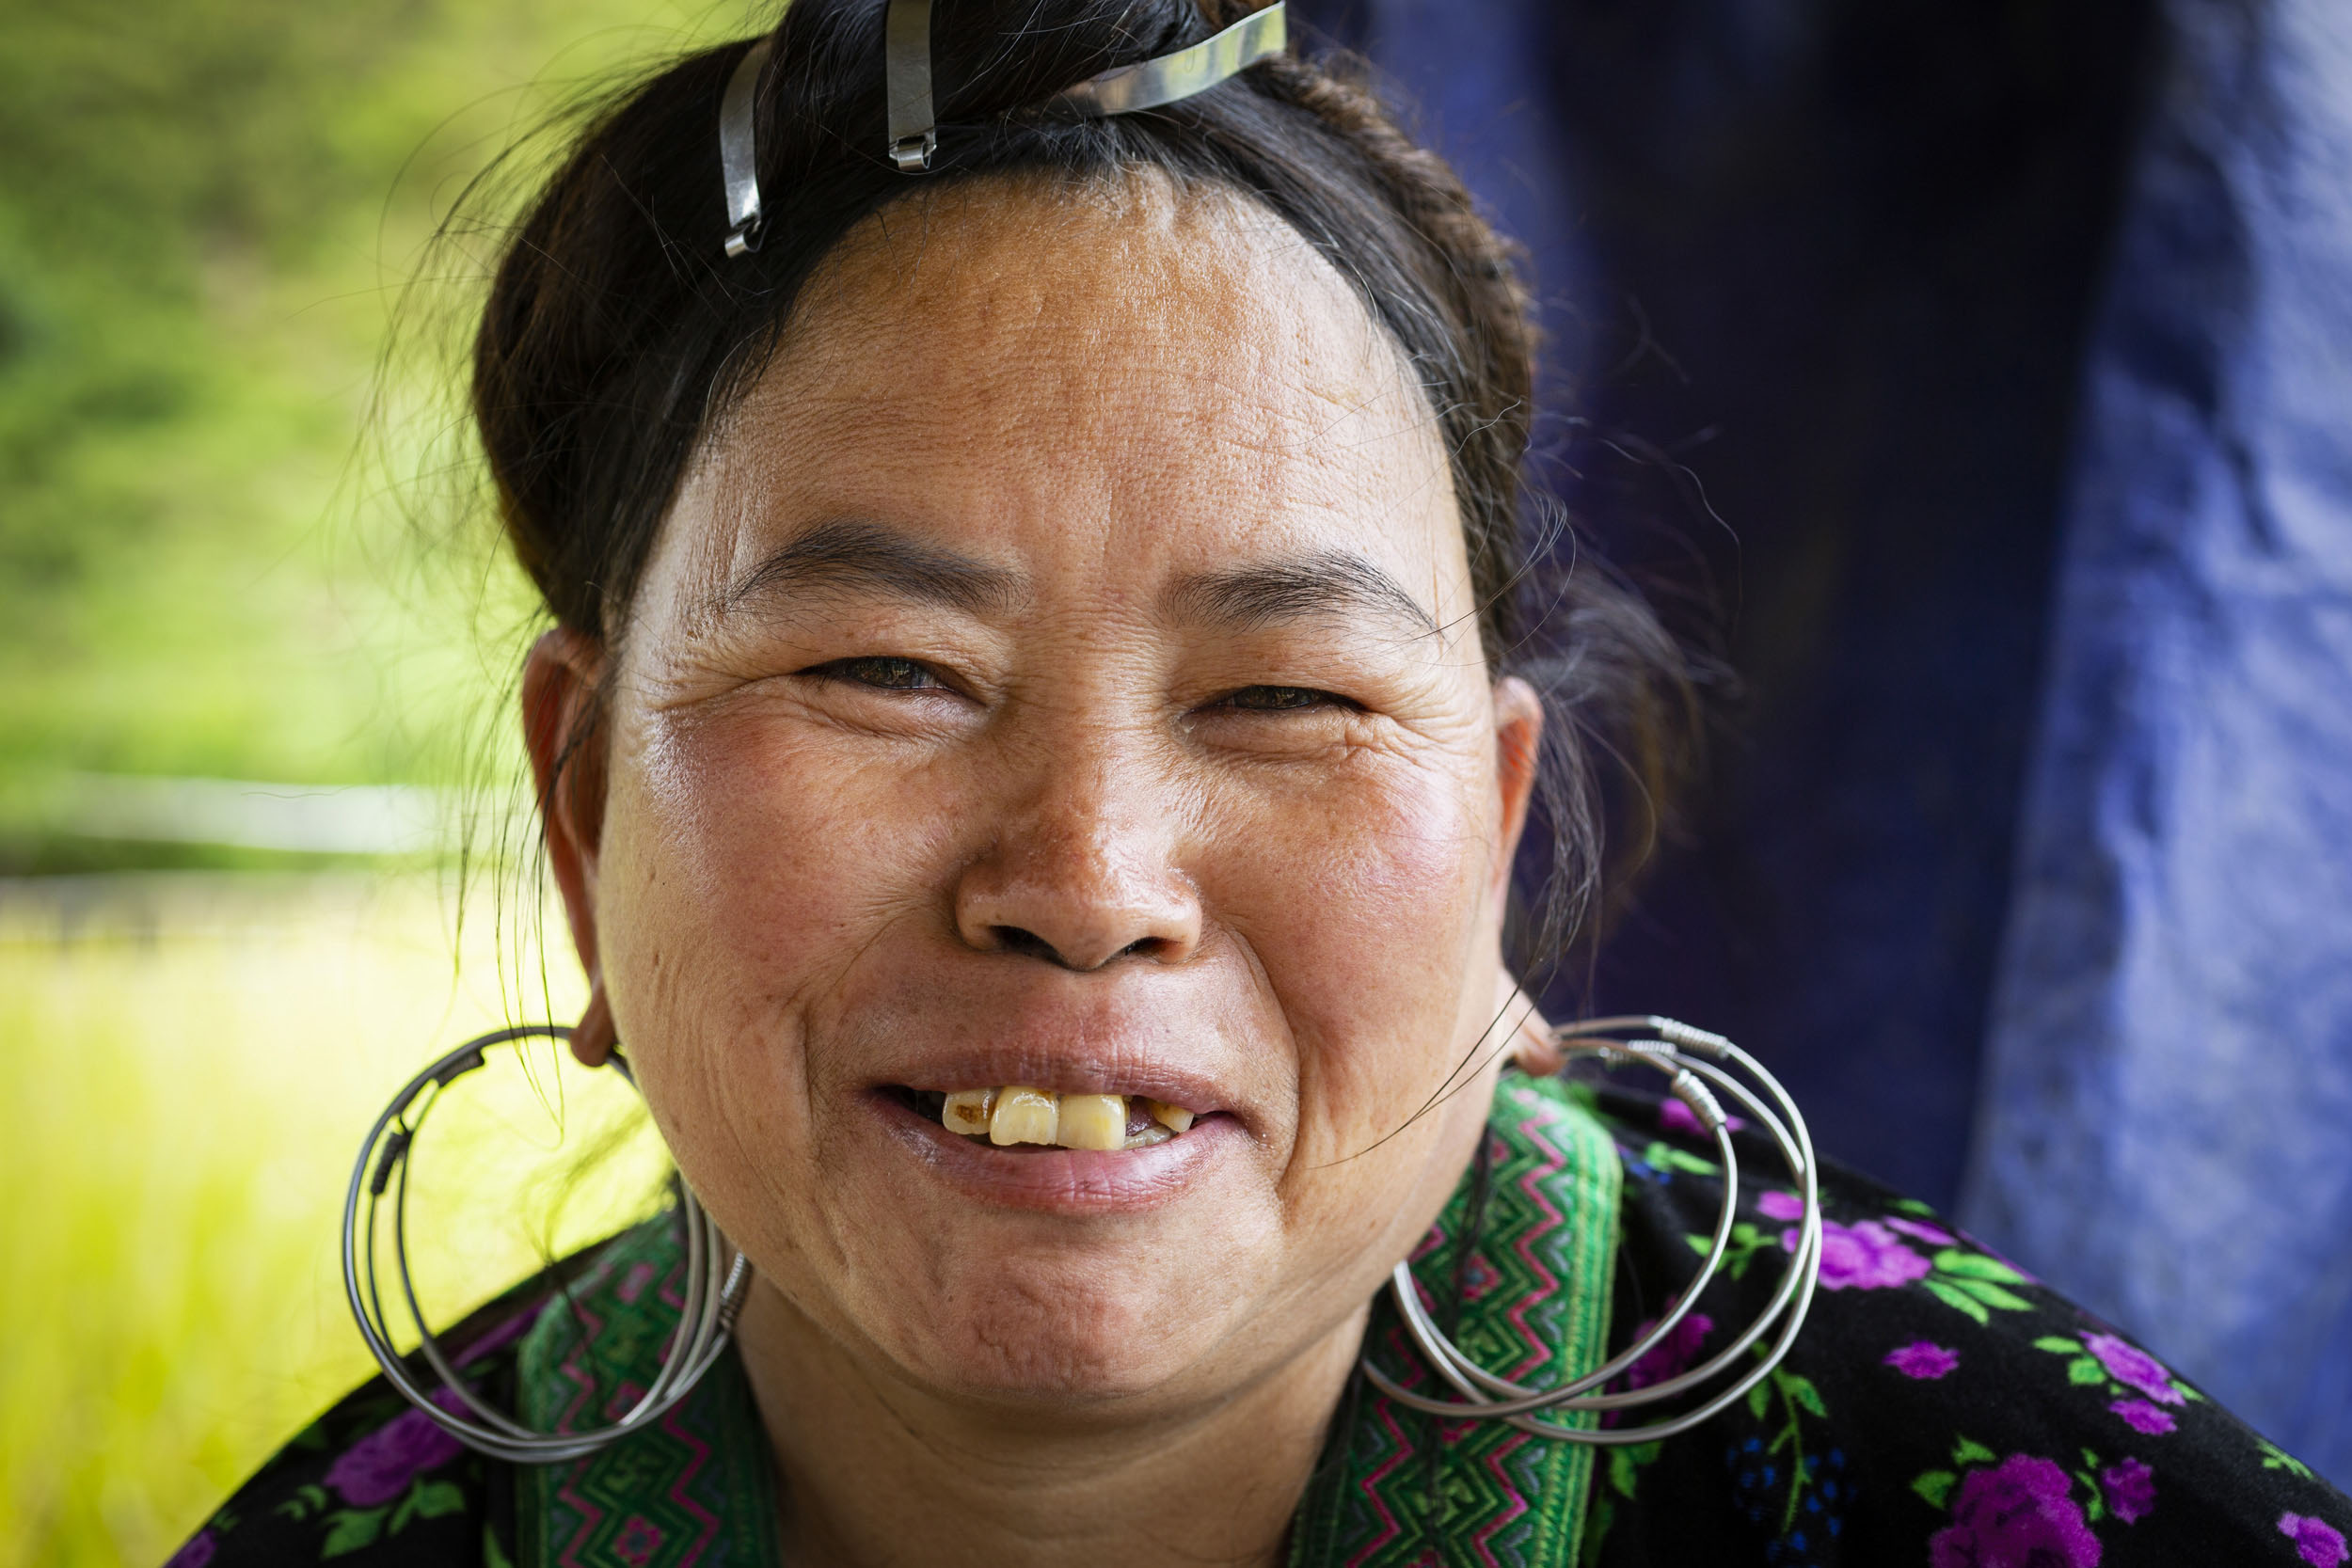 Portrait en gros plan d'une villageoise en pause déjeuner dans les rizières de la région de Sa Pa pendant la récolte. Photo de portrait réalisée lors d'un voyage au Vietnam.